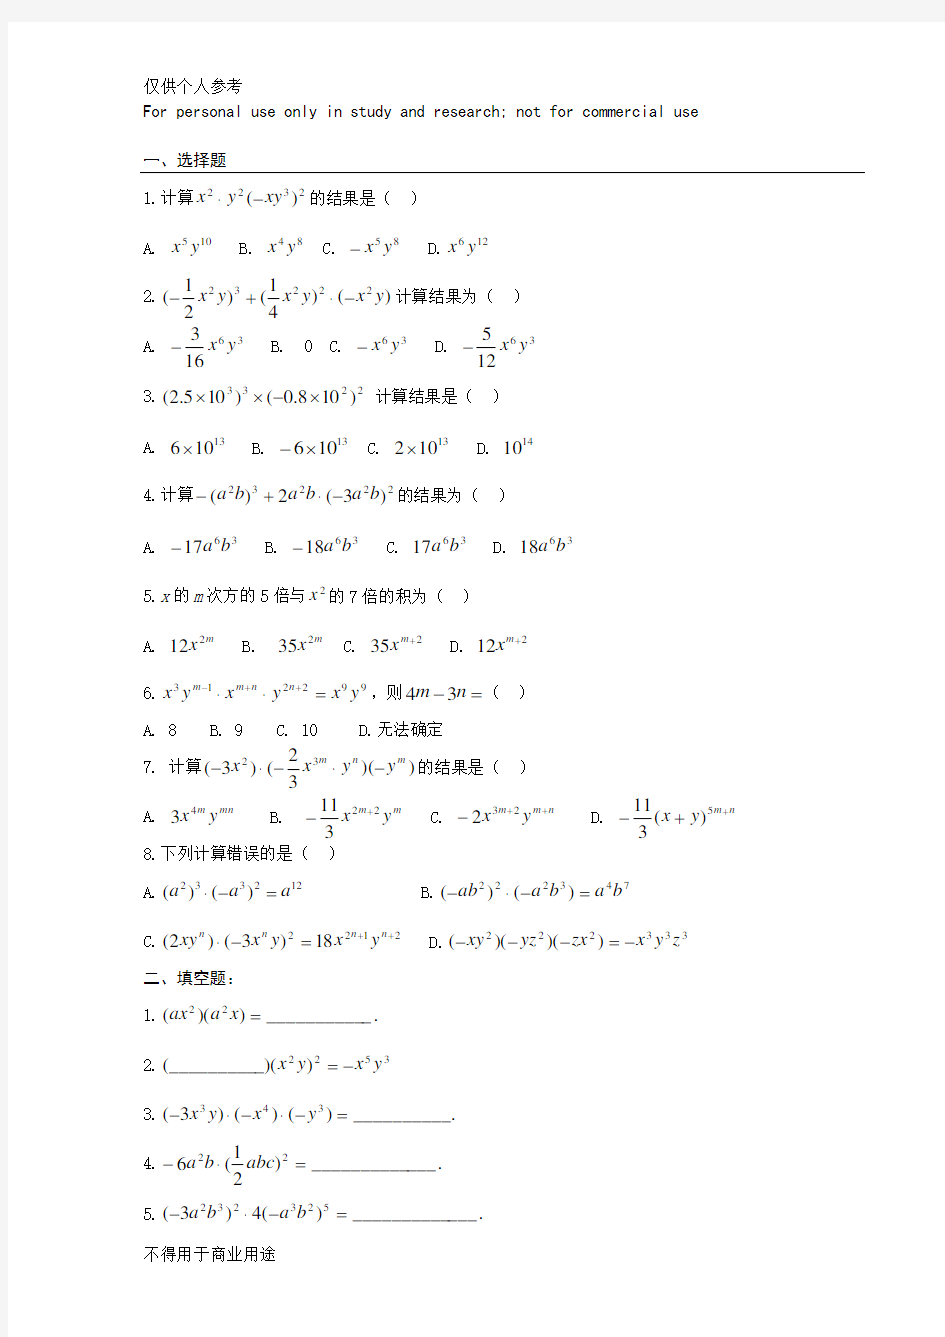 (完整版)单项式乘以单项式、单项式乘以多项式练习题